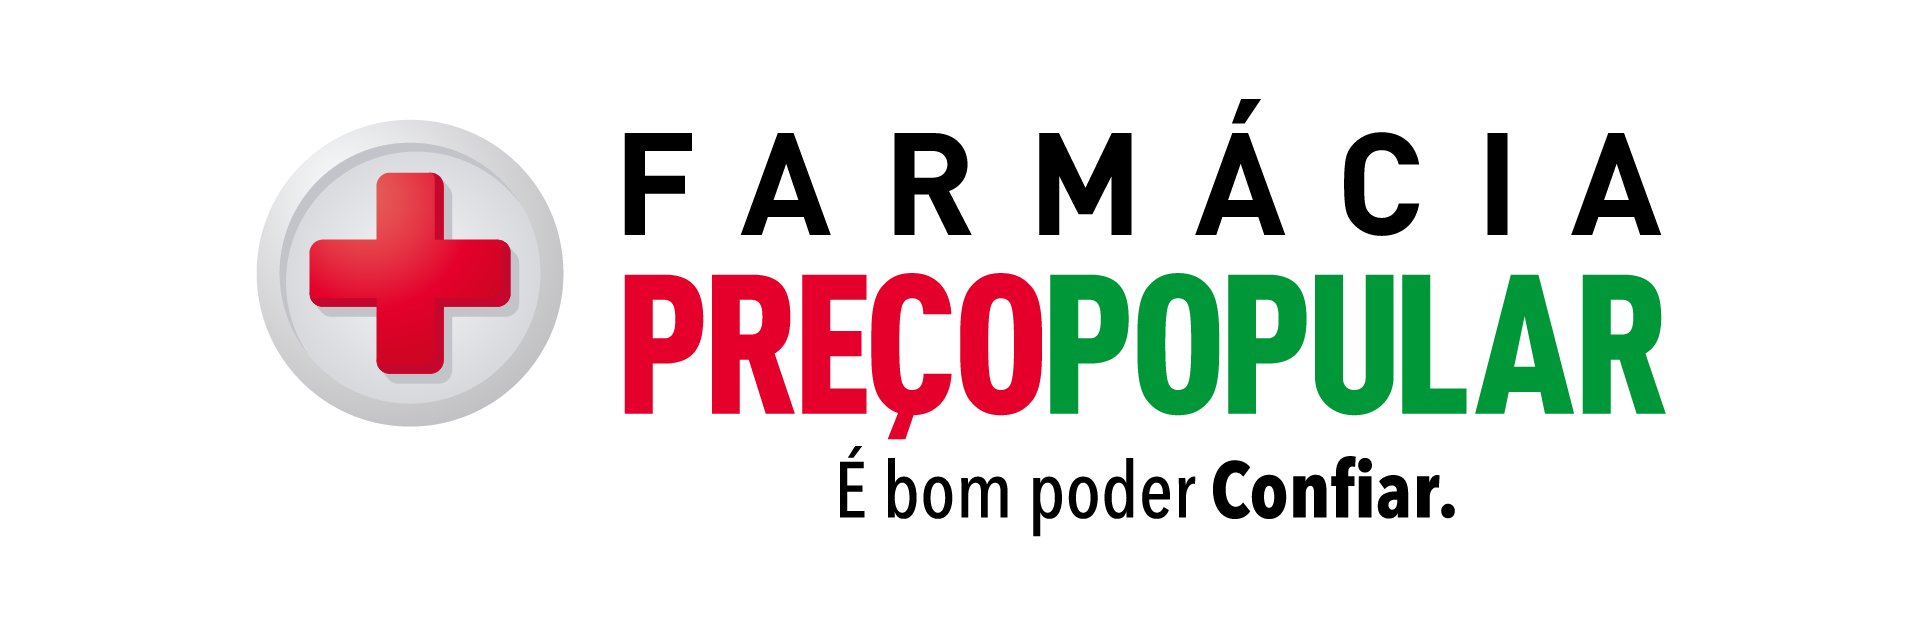 preco-popular